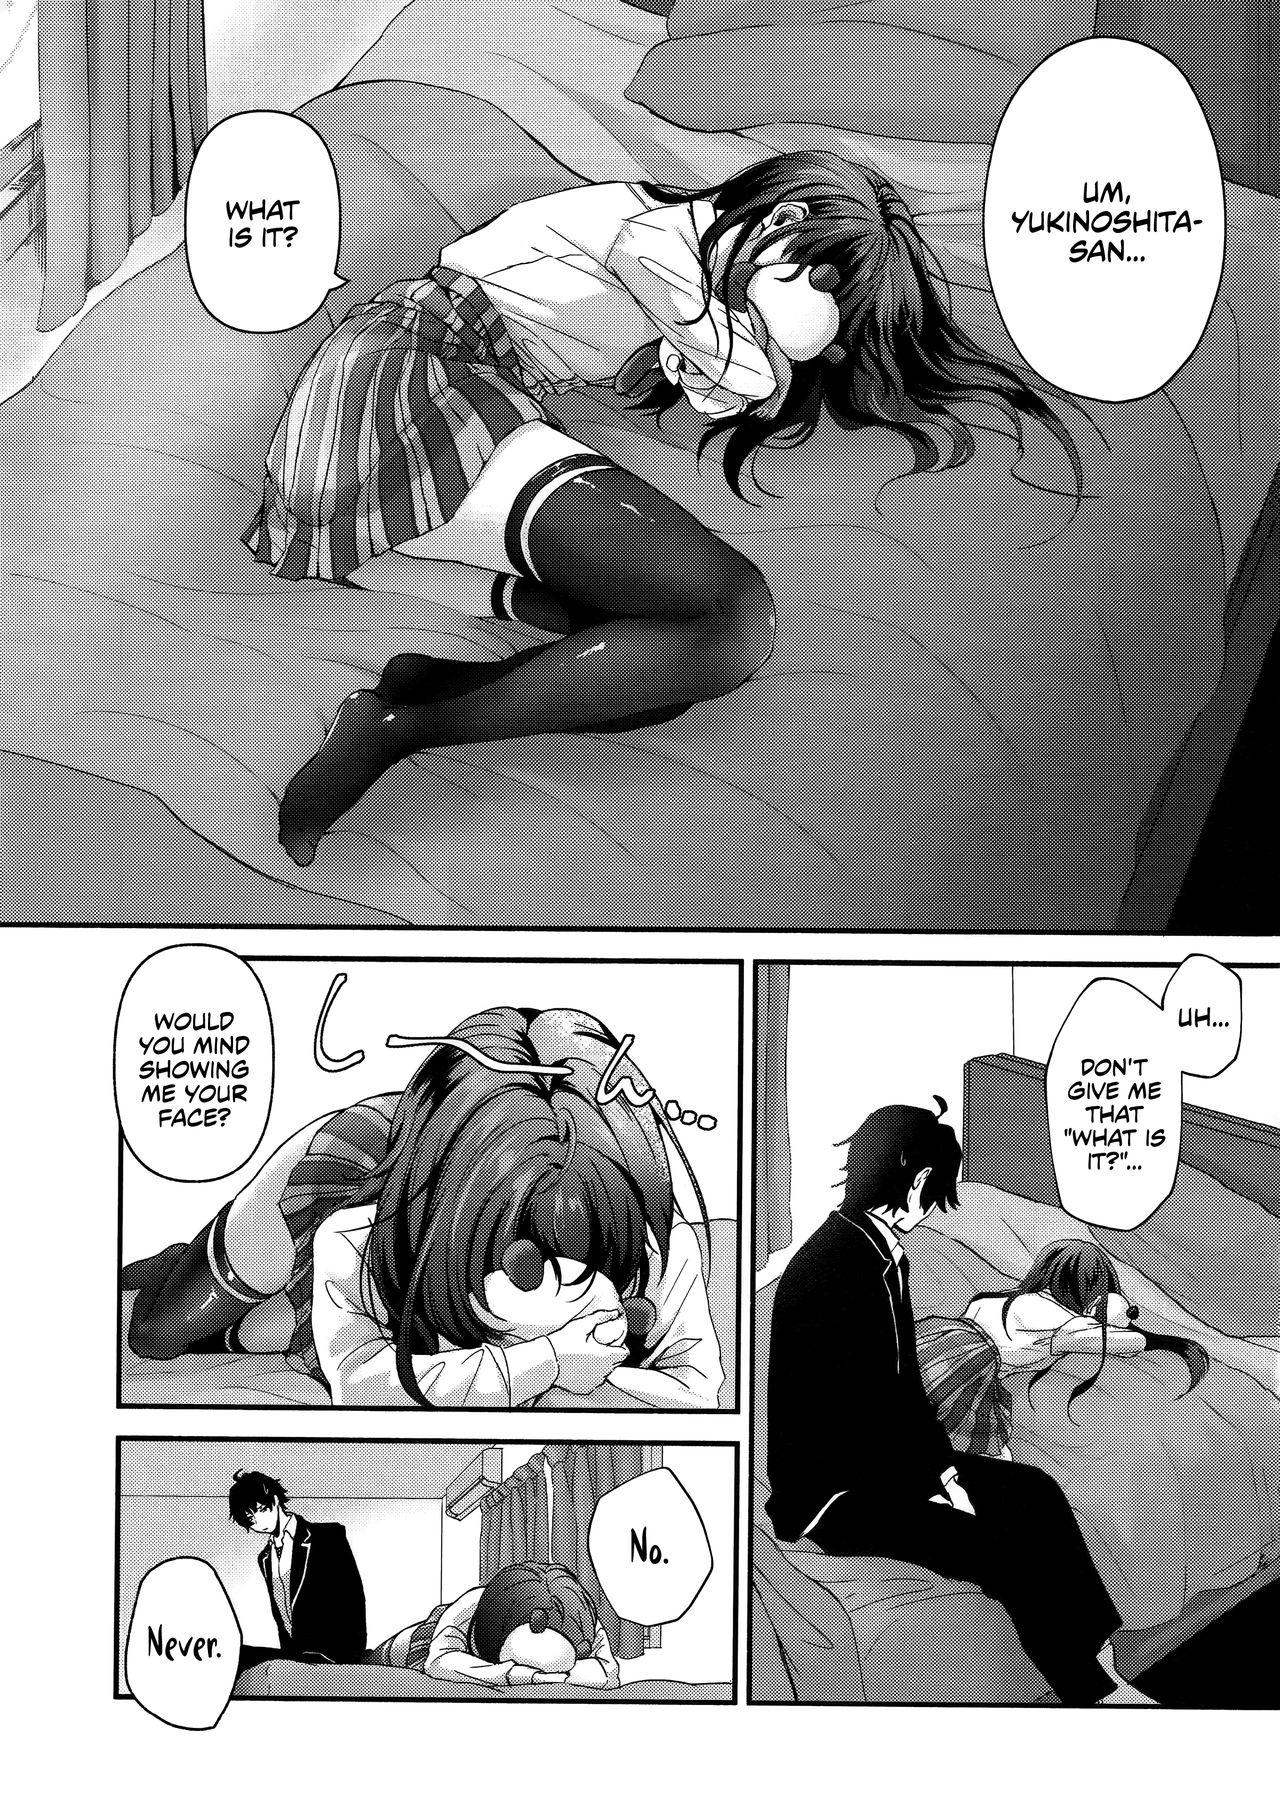 Boob Yukinohi. - Yahari ore no seishun love come wa machigatteiru Massage - Page 2